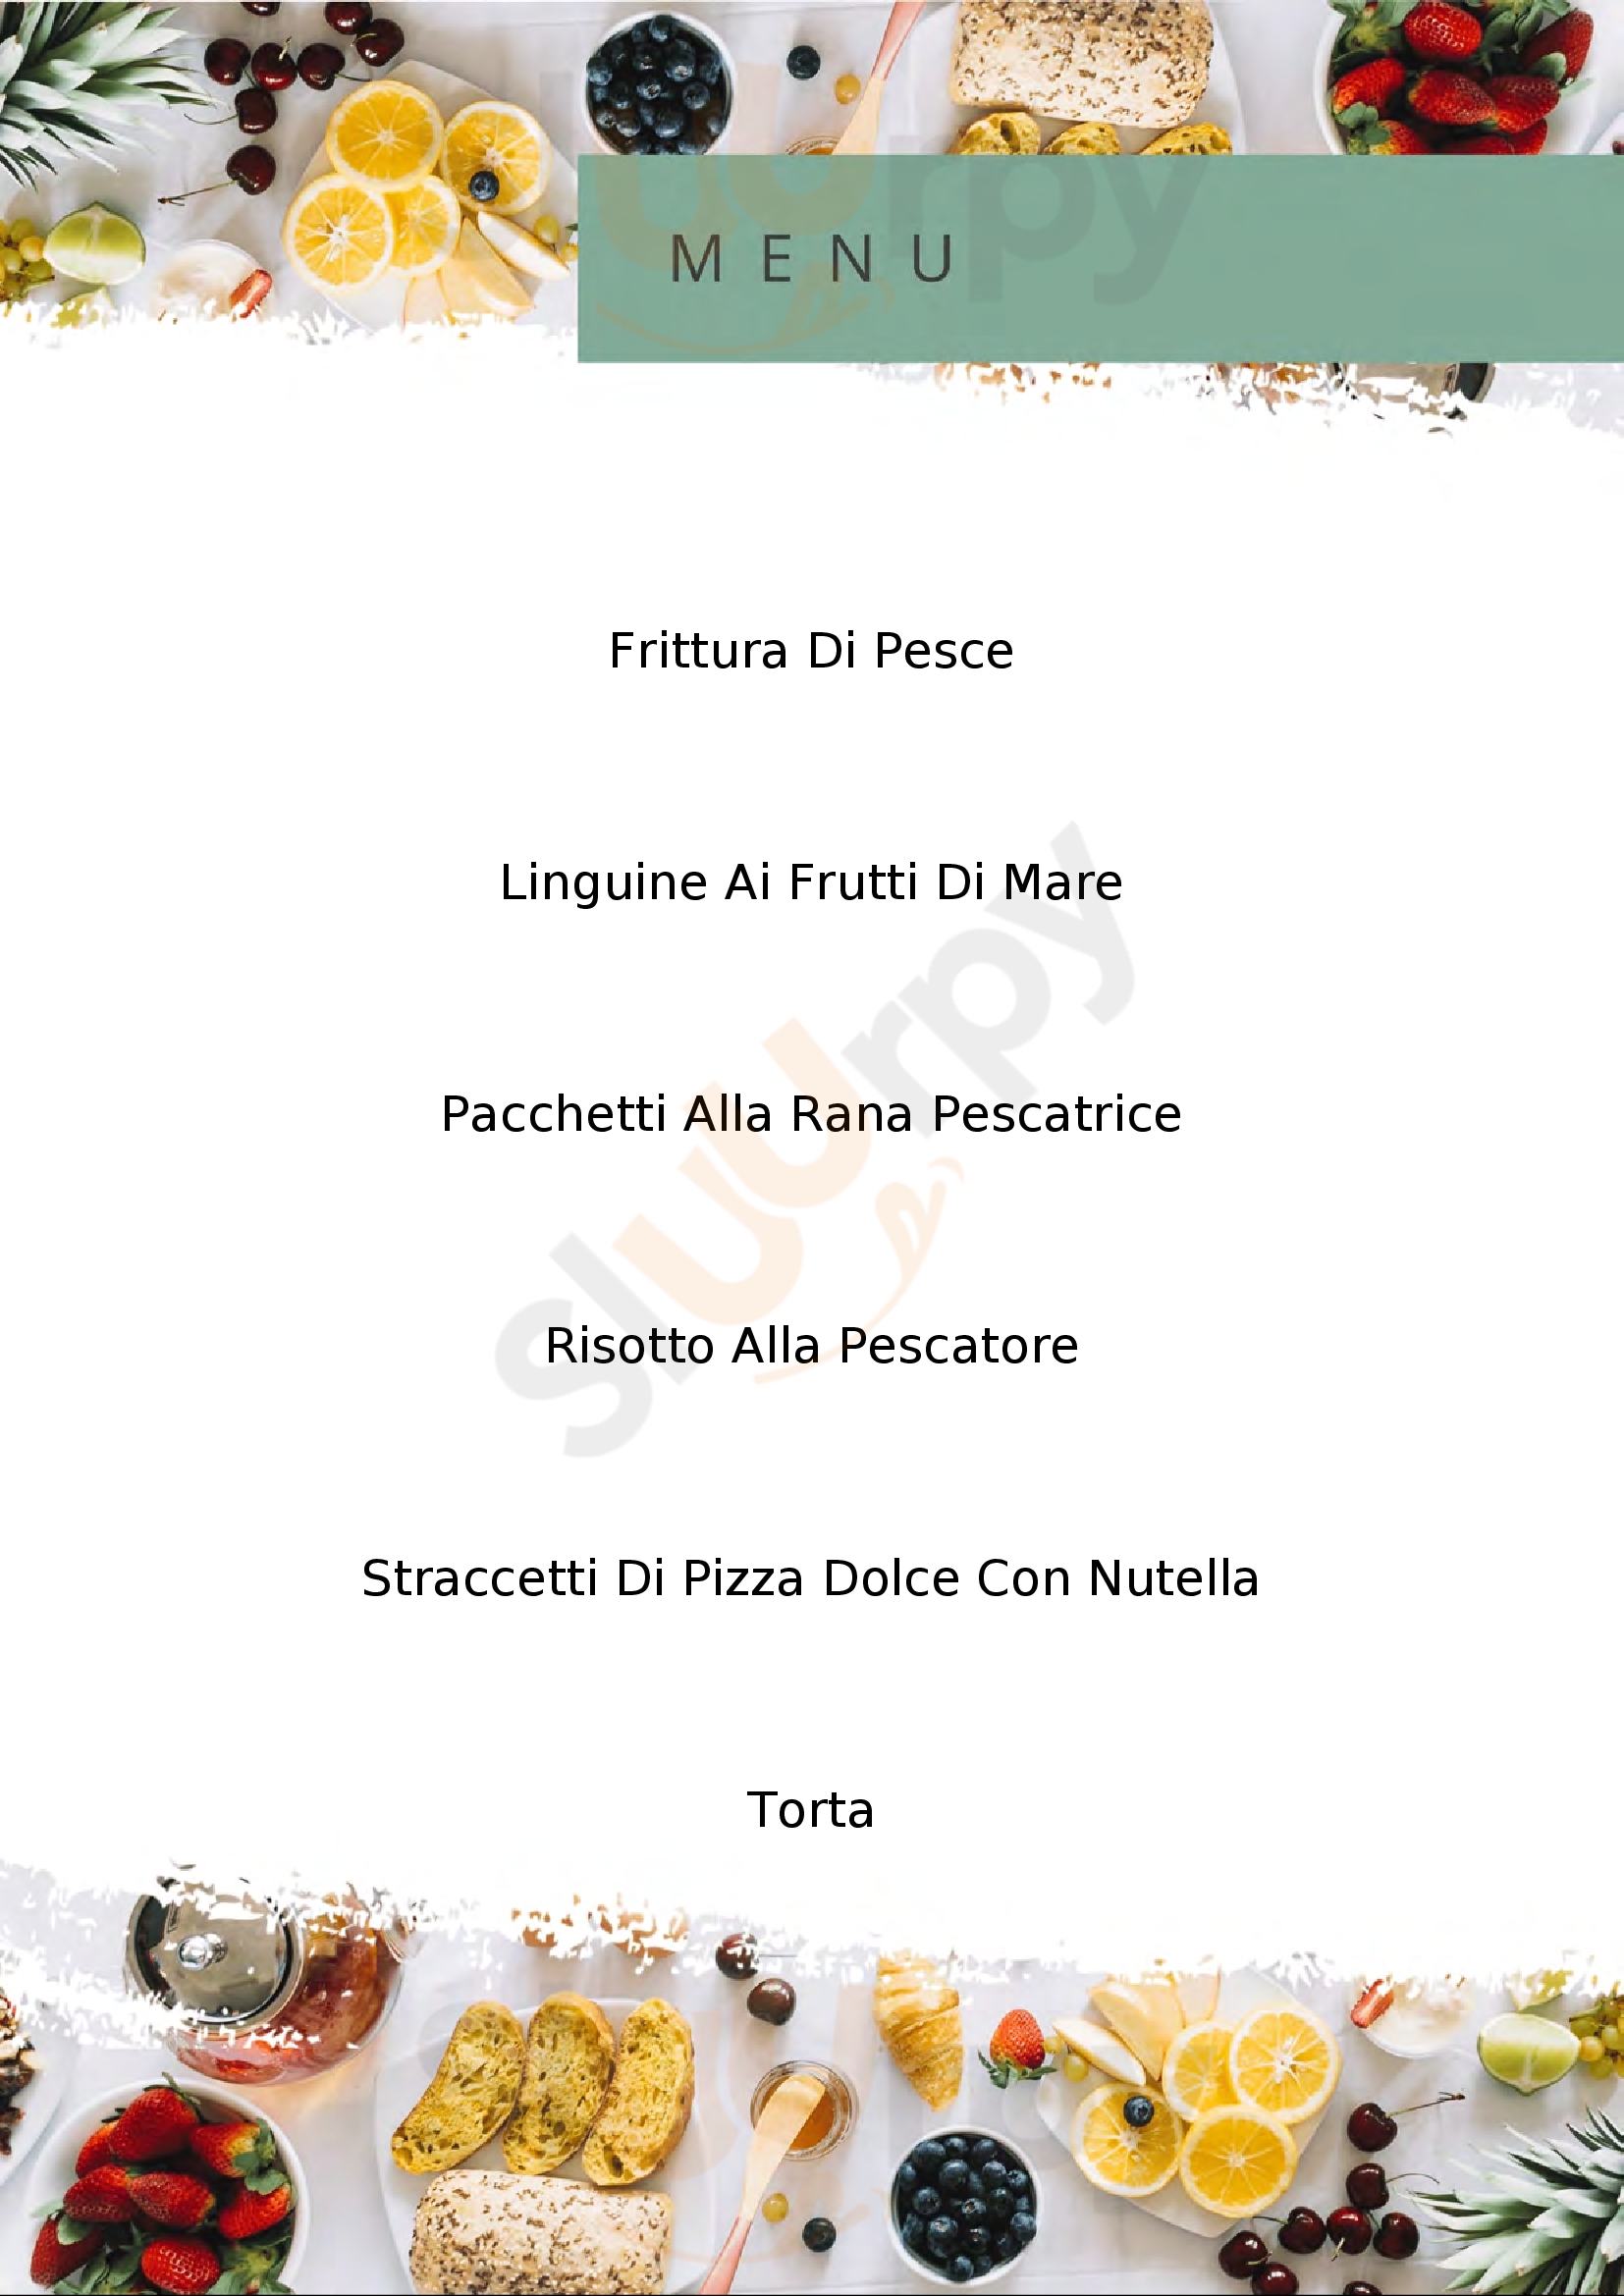 Acatullo Risto-Pescheria Pizzeria Caivano menù 1 pagina